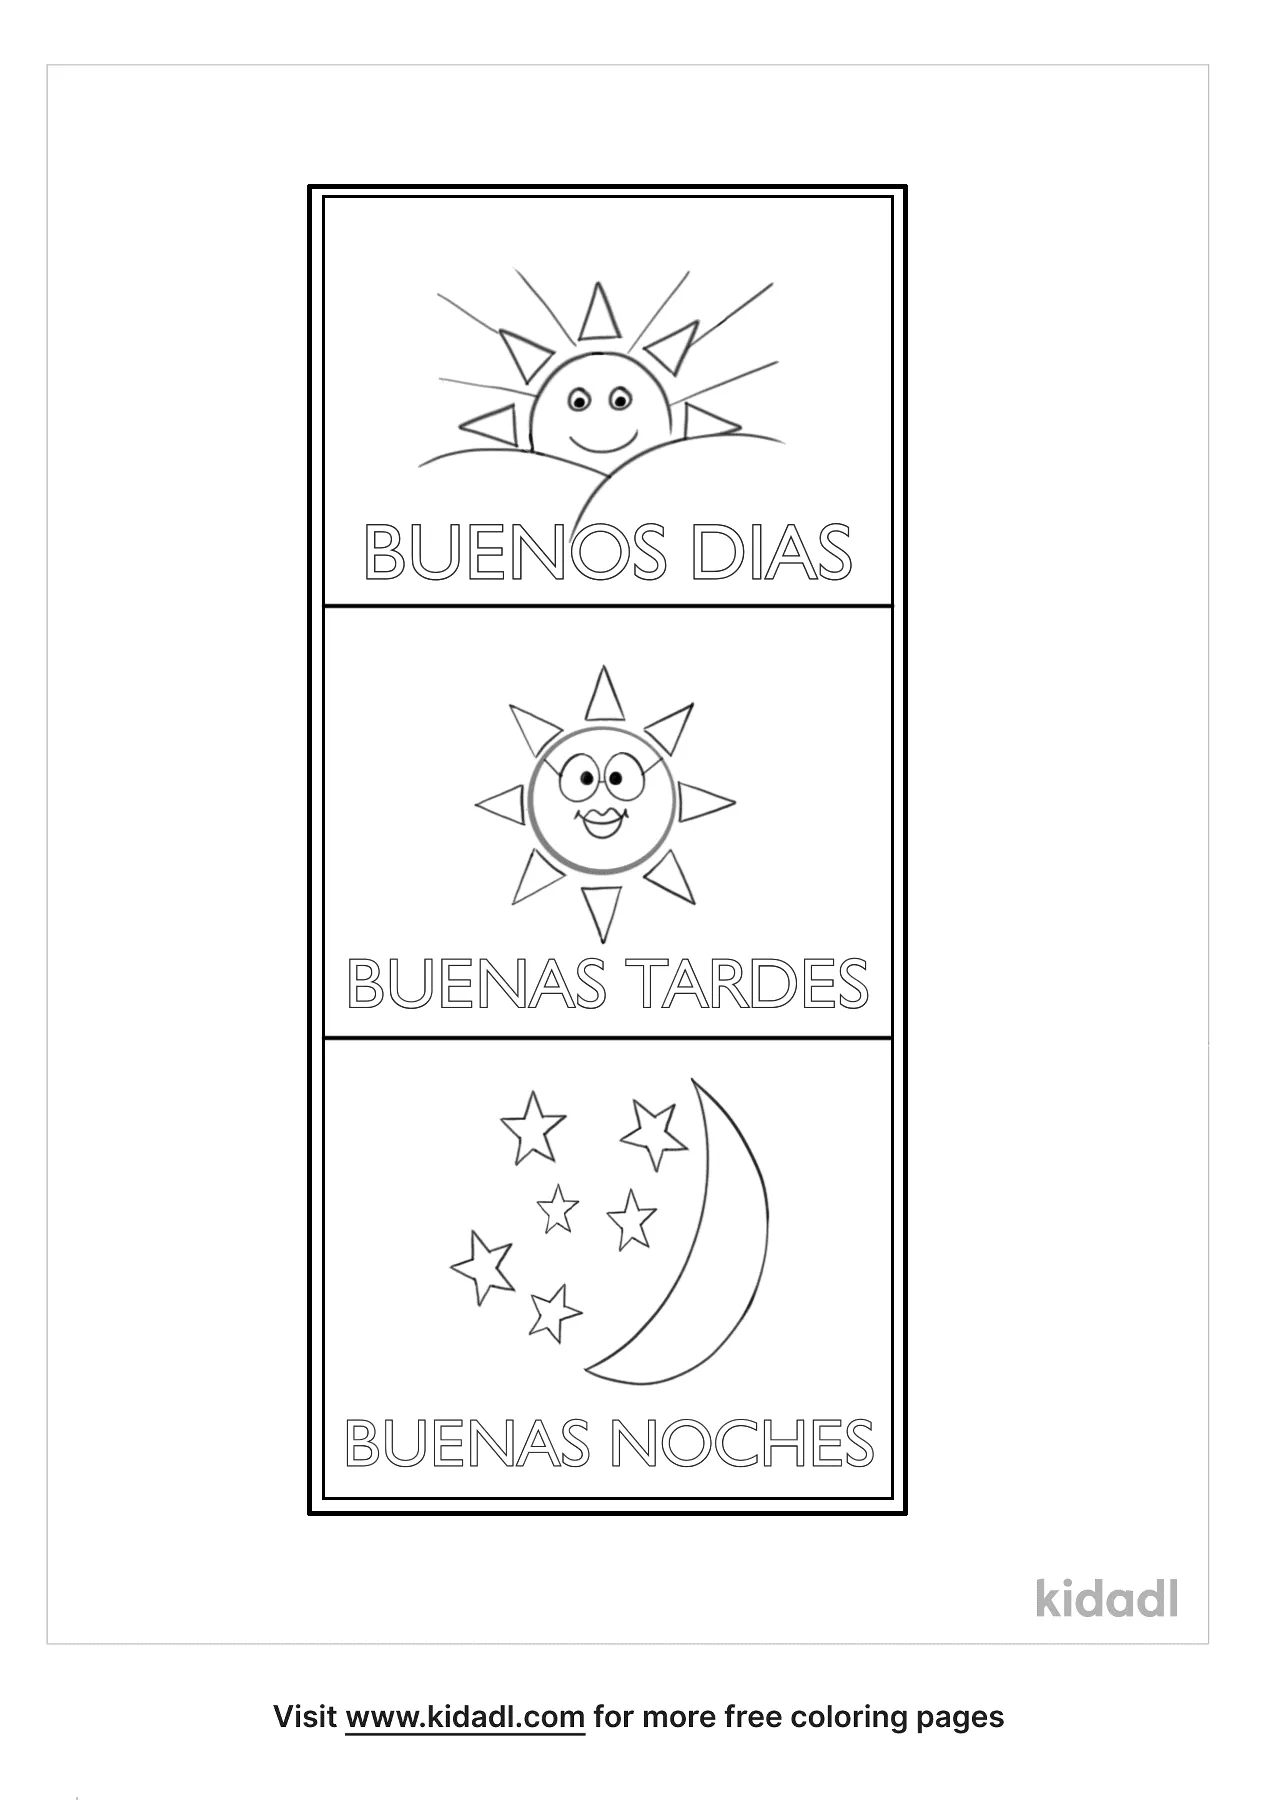 Free Buenos Dias Buenas Tardes Buenas Noches Coloring Page | Coloring Page  Printables | Kidadl